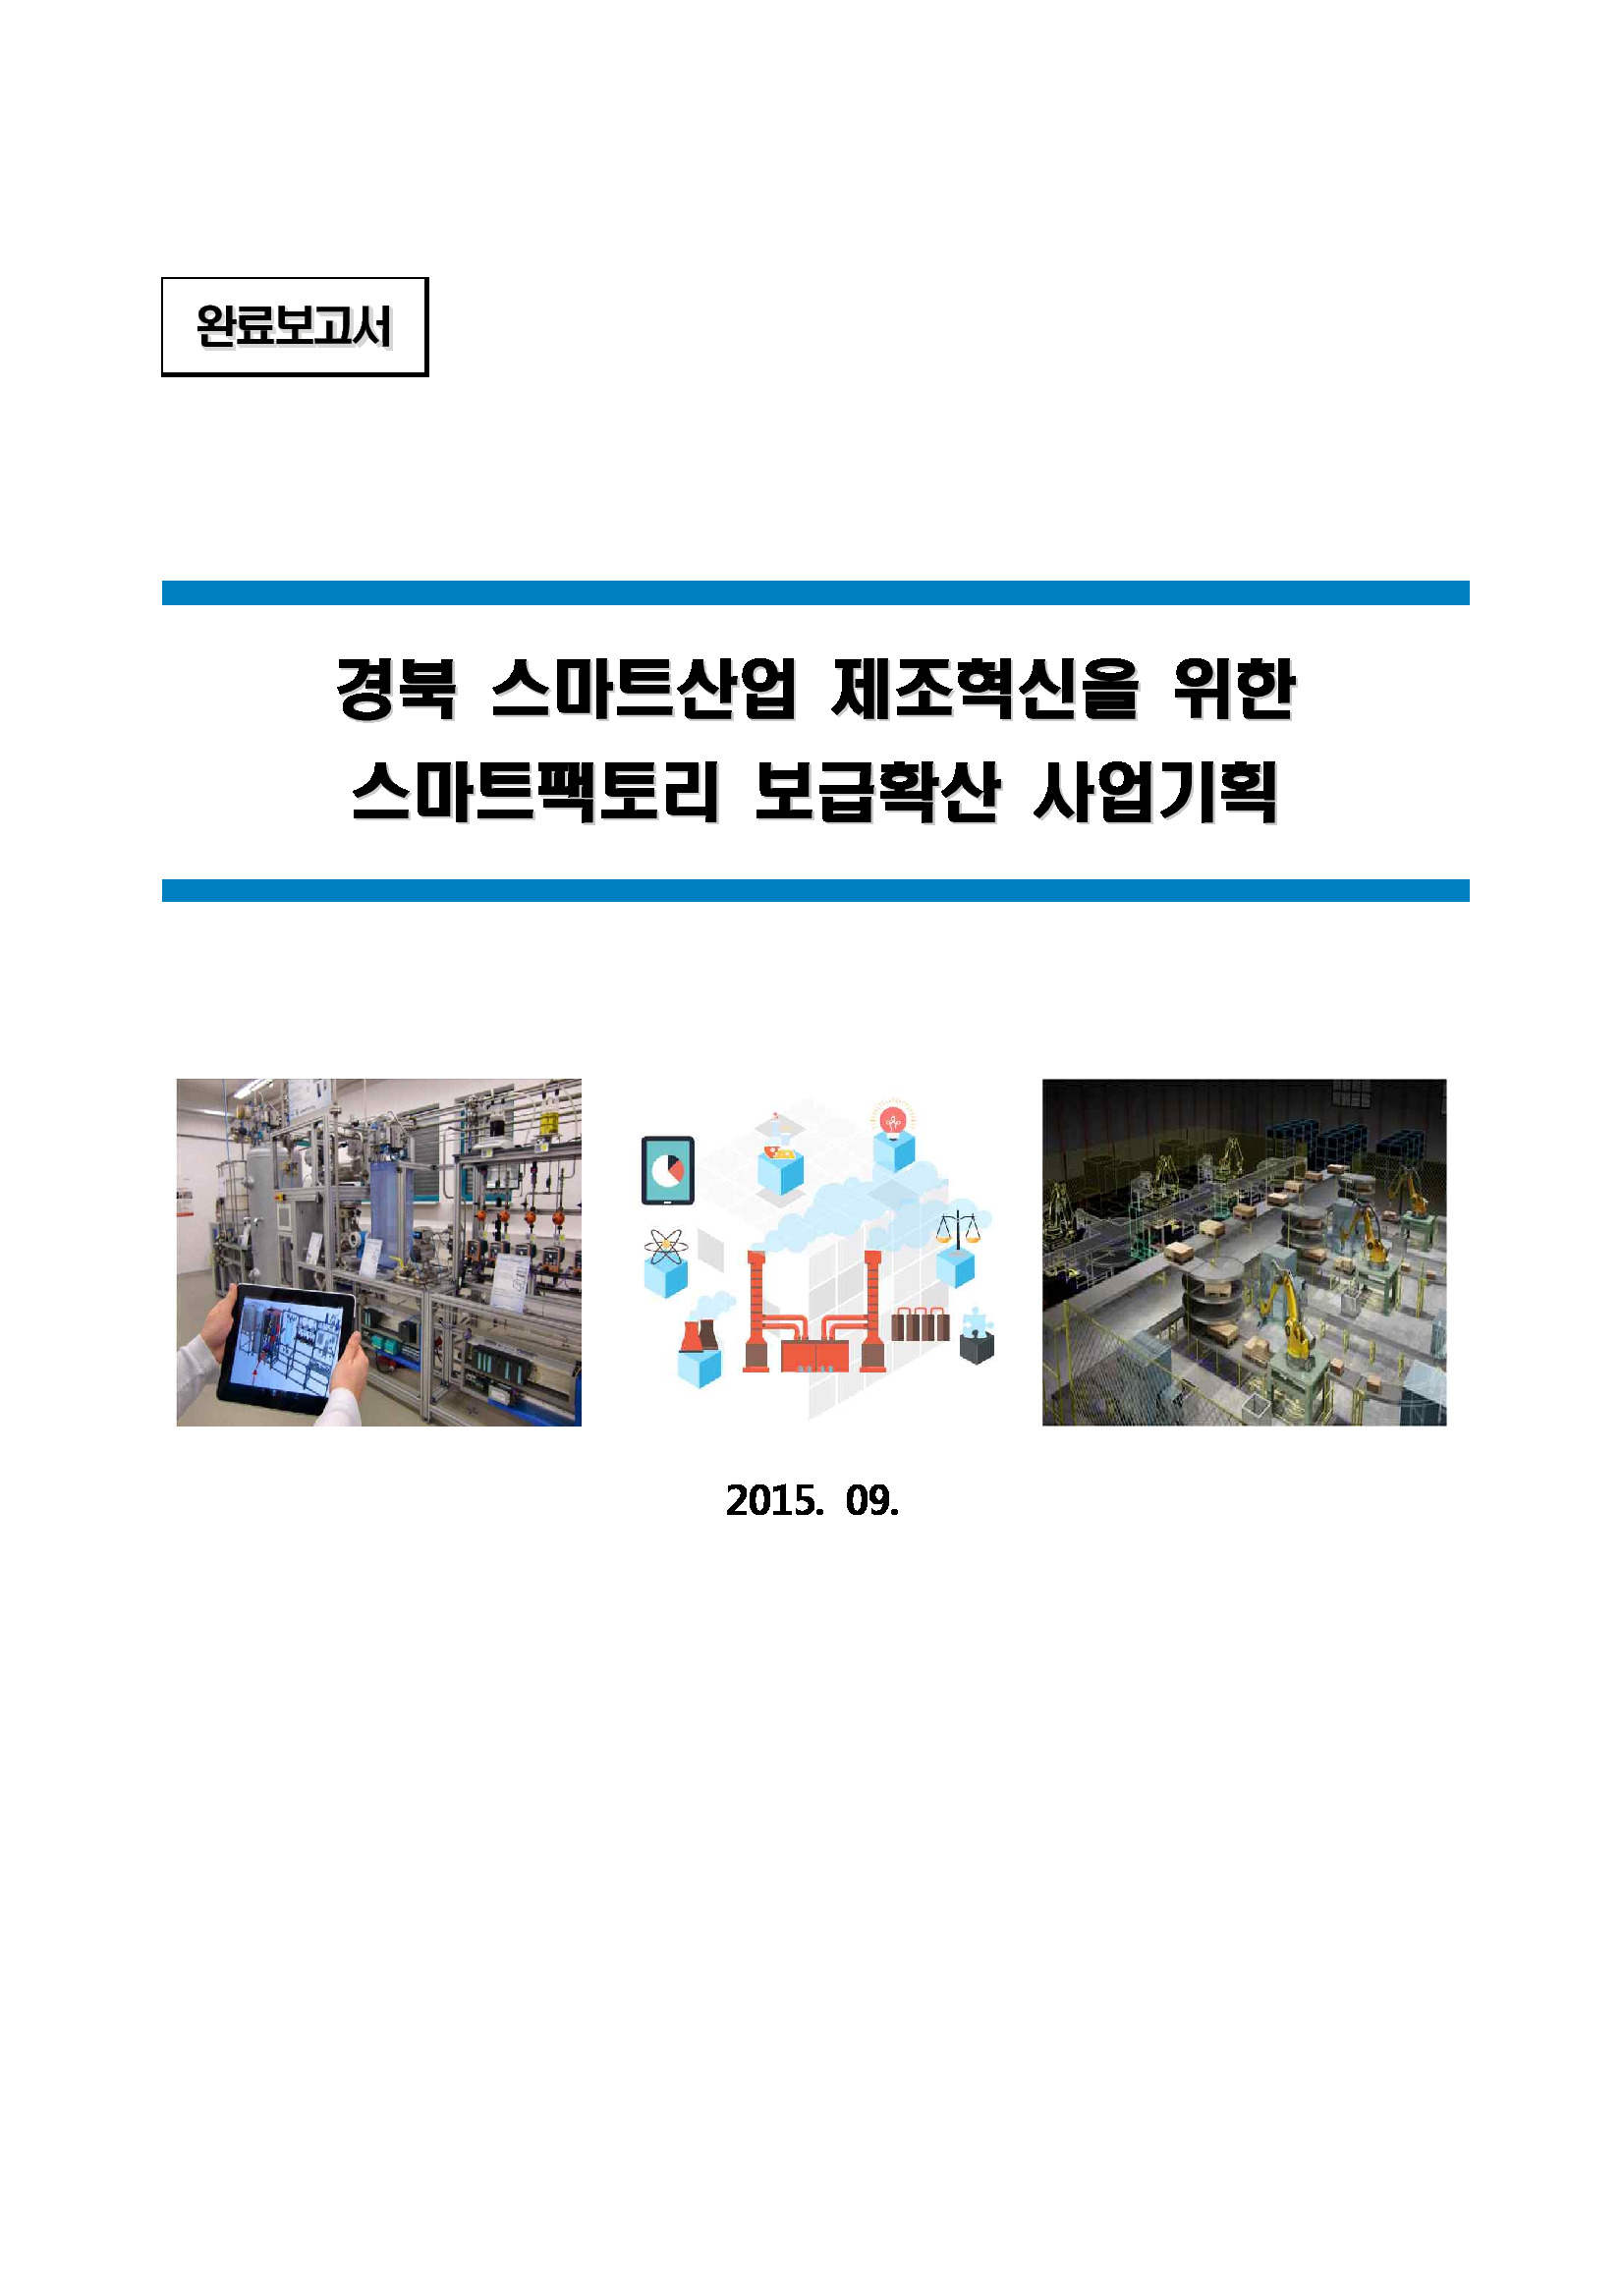 경북스마트산업 제조혁신을 위한 스마트팩토리 보급확산 사업기획 연구용역